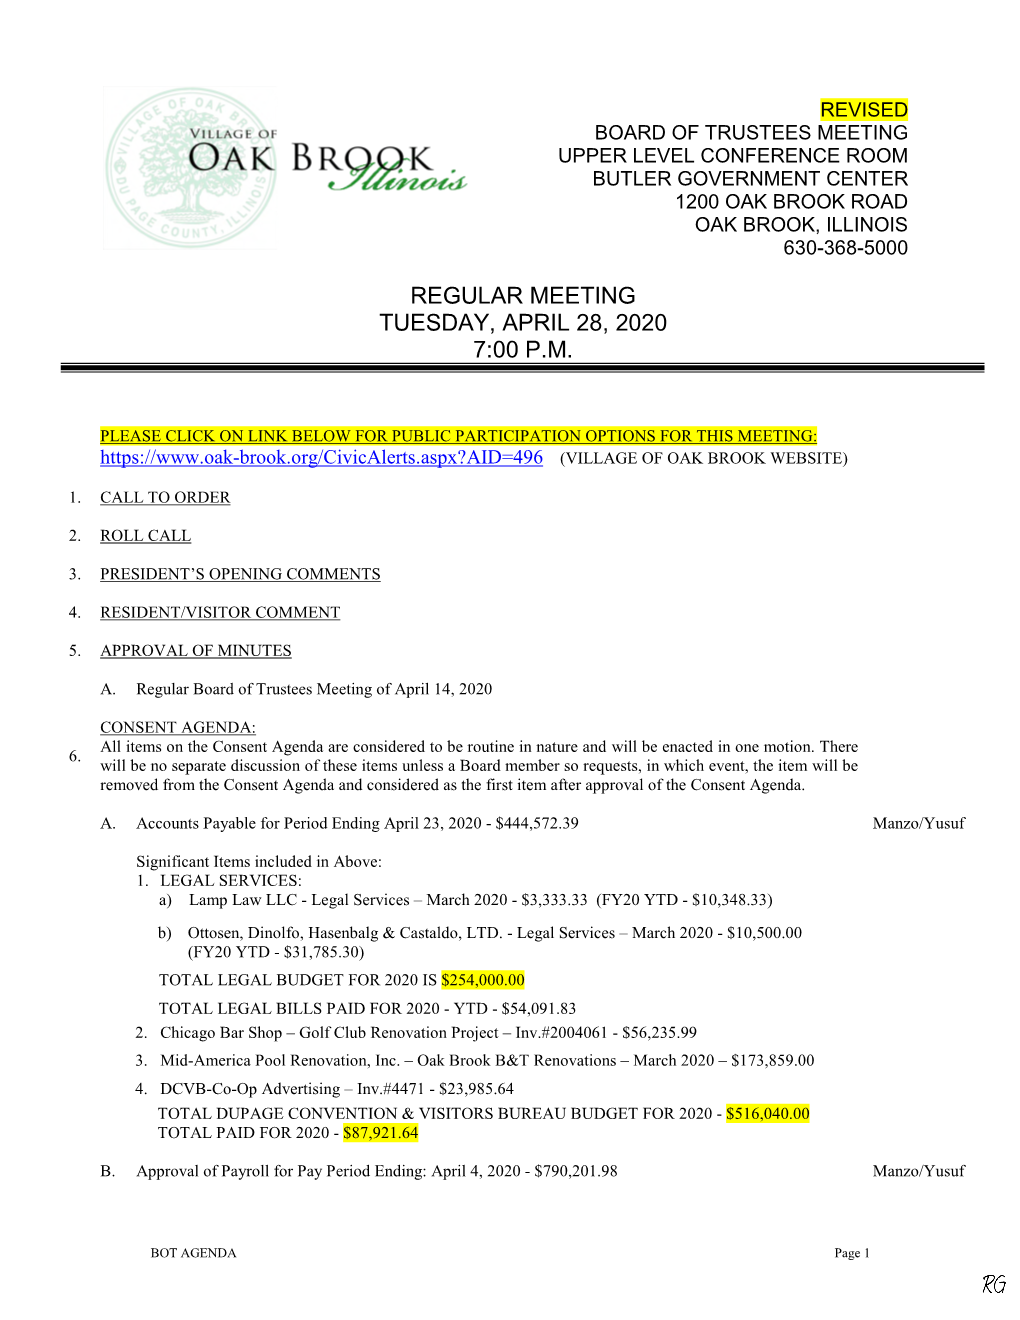 Regular Meeting Tuesday, April 28, 2020 7:00 P.M